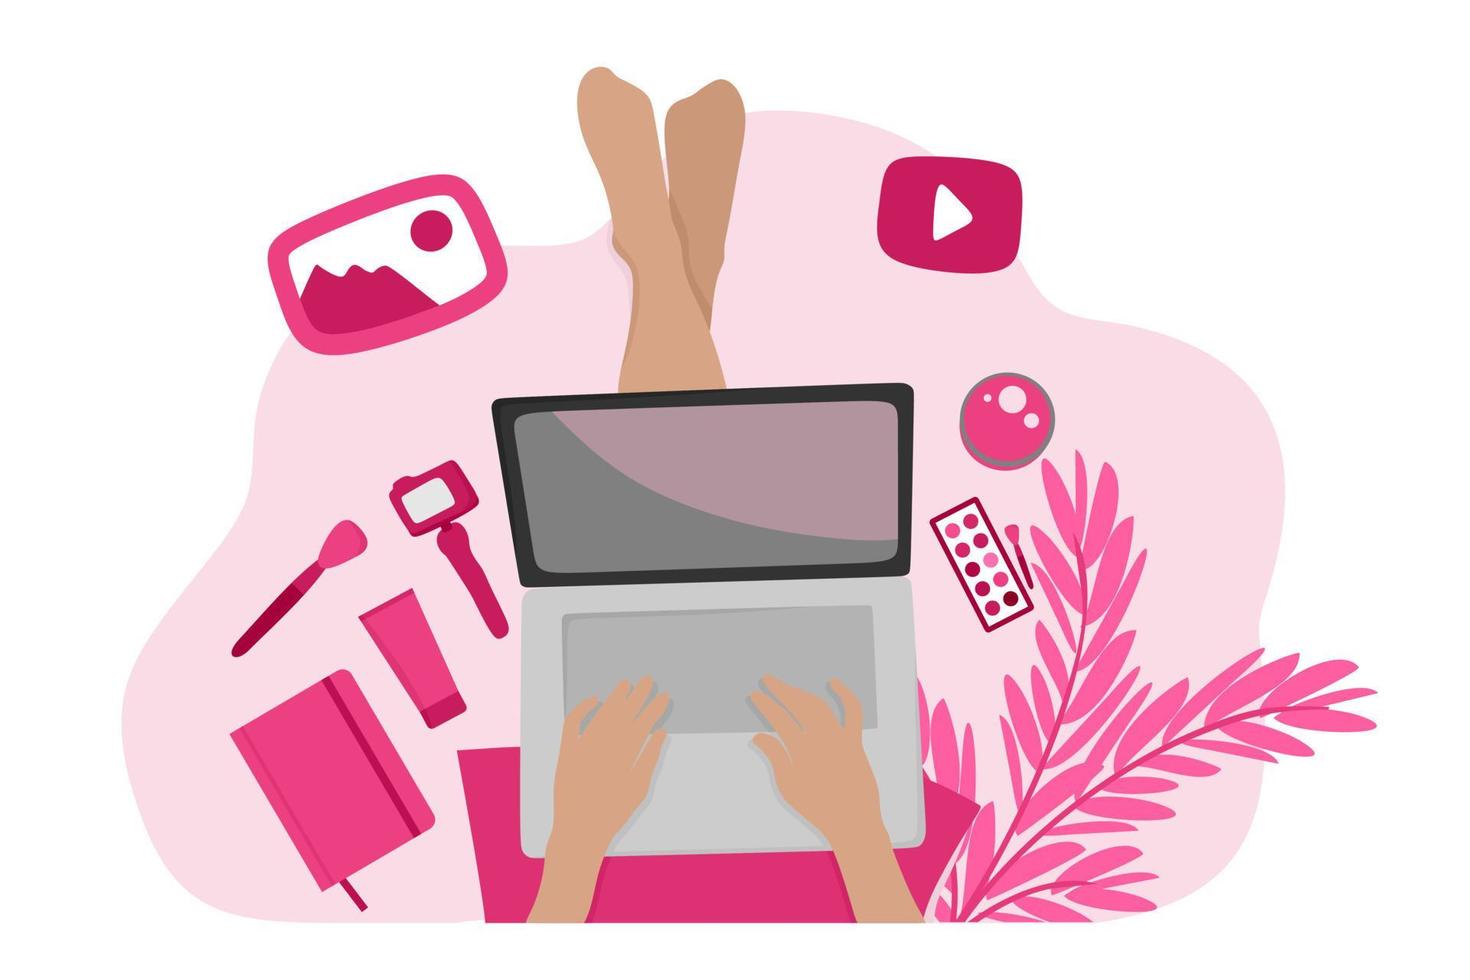 uma garota blogueira de beleza faz um vídeo tutorial de maquiagem enquanto está sentada no chão. ilustração vetorial em um estilo simples para uso em web design, redes sociais, sites, blogs. vetor